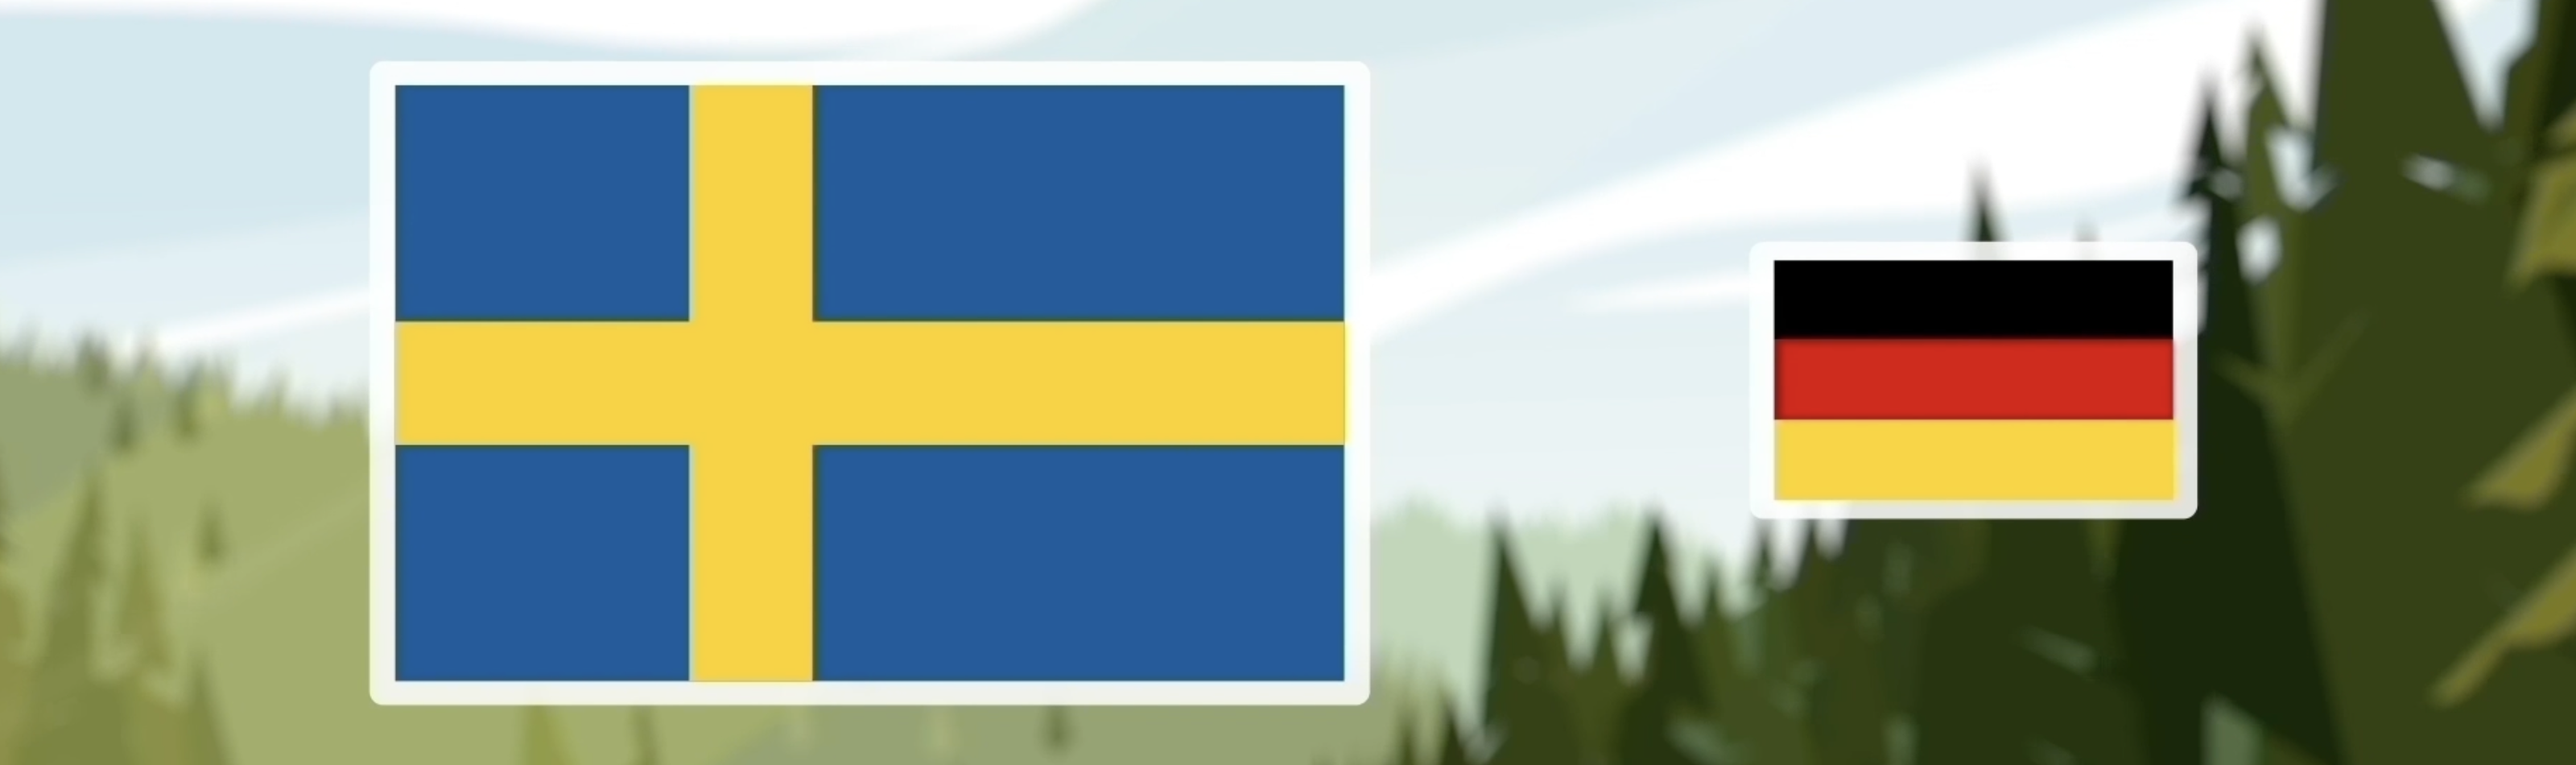 Skyddad skog i Sverige och Tyskland